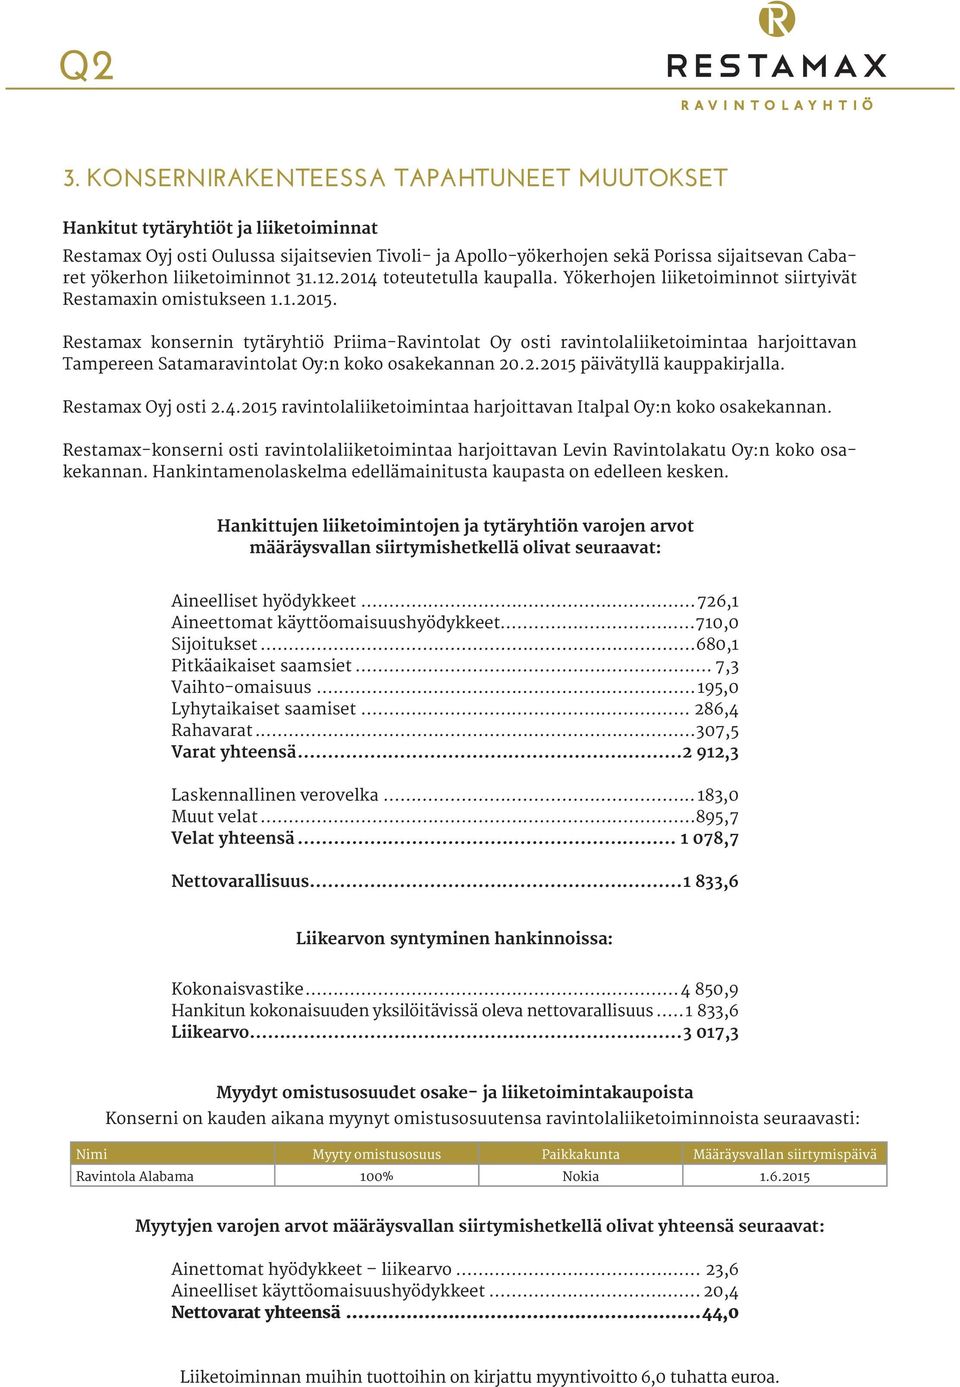 Restamax konsernin tytäryhtiö Priima-Ravintolat Oy osti ravintolaliiketoimintaa harjoittavan Tampereen Satamaravintolat Oy:n koko osakekannan 20.2.2015 päivätyllä kauppakirjalla. Restamax Oyj osti 2.